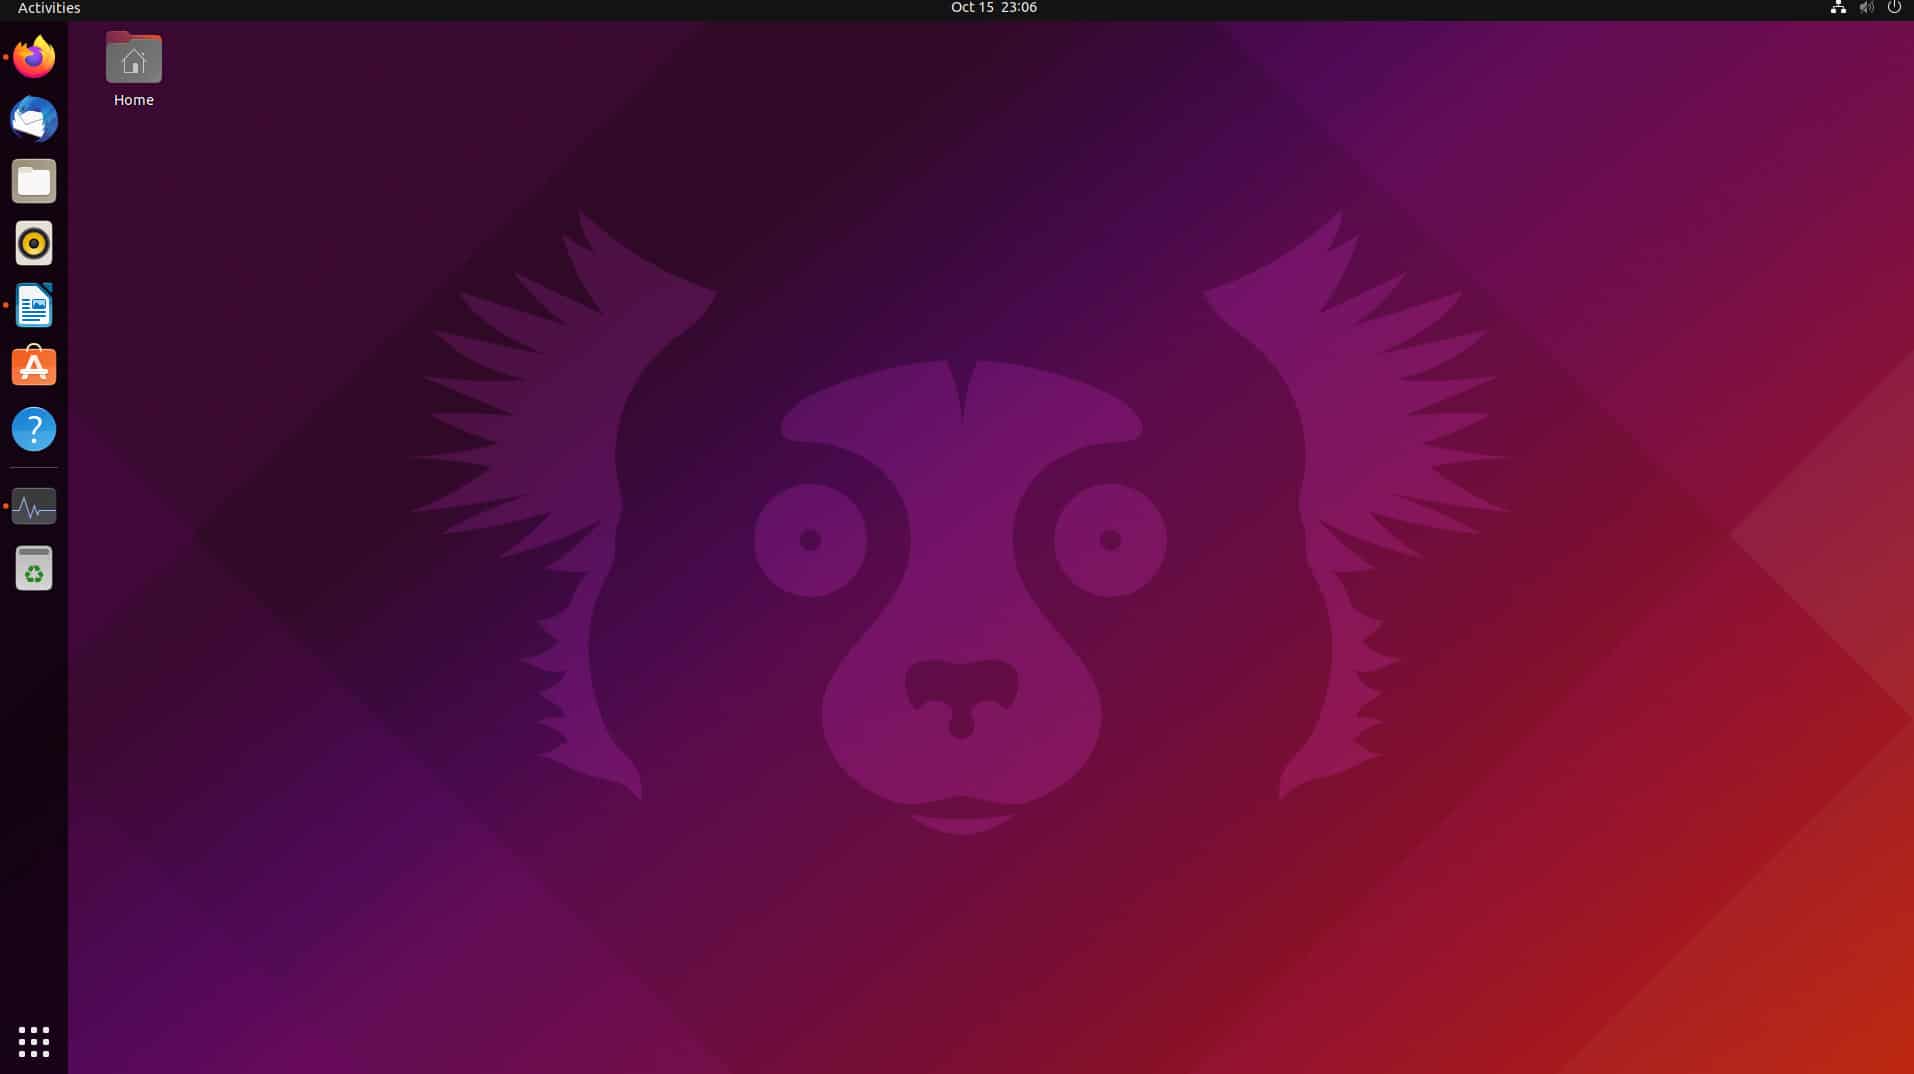 Ubuntu released 21.10